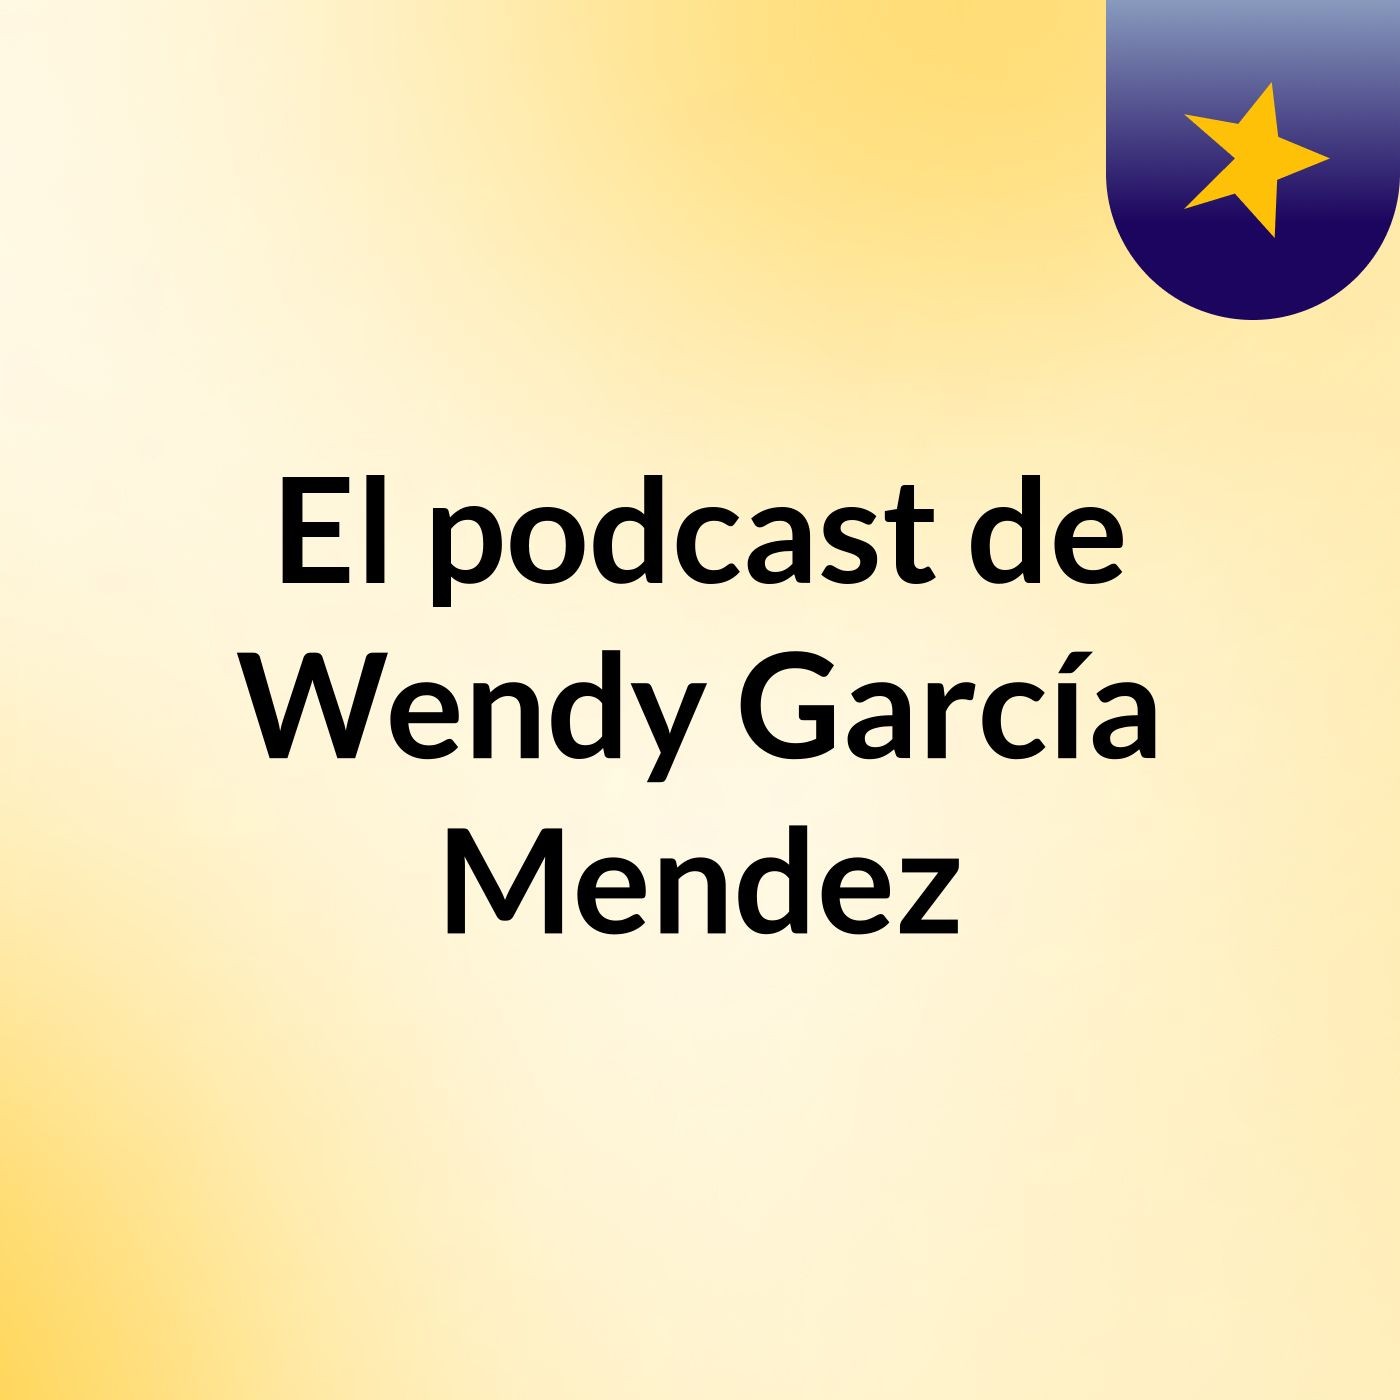 El podcast de Wendy García Mendez